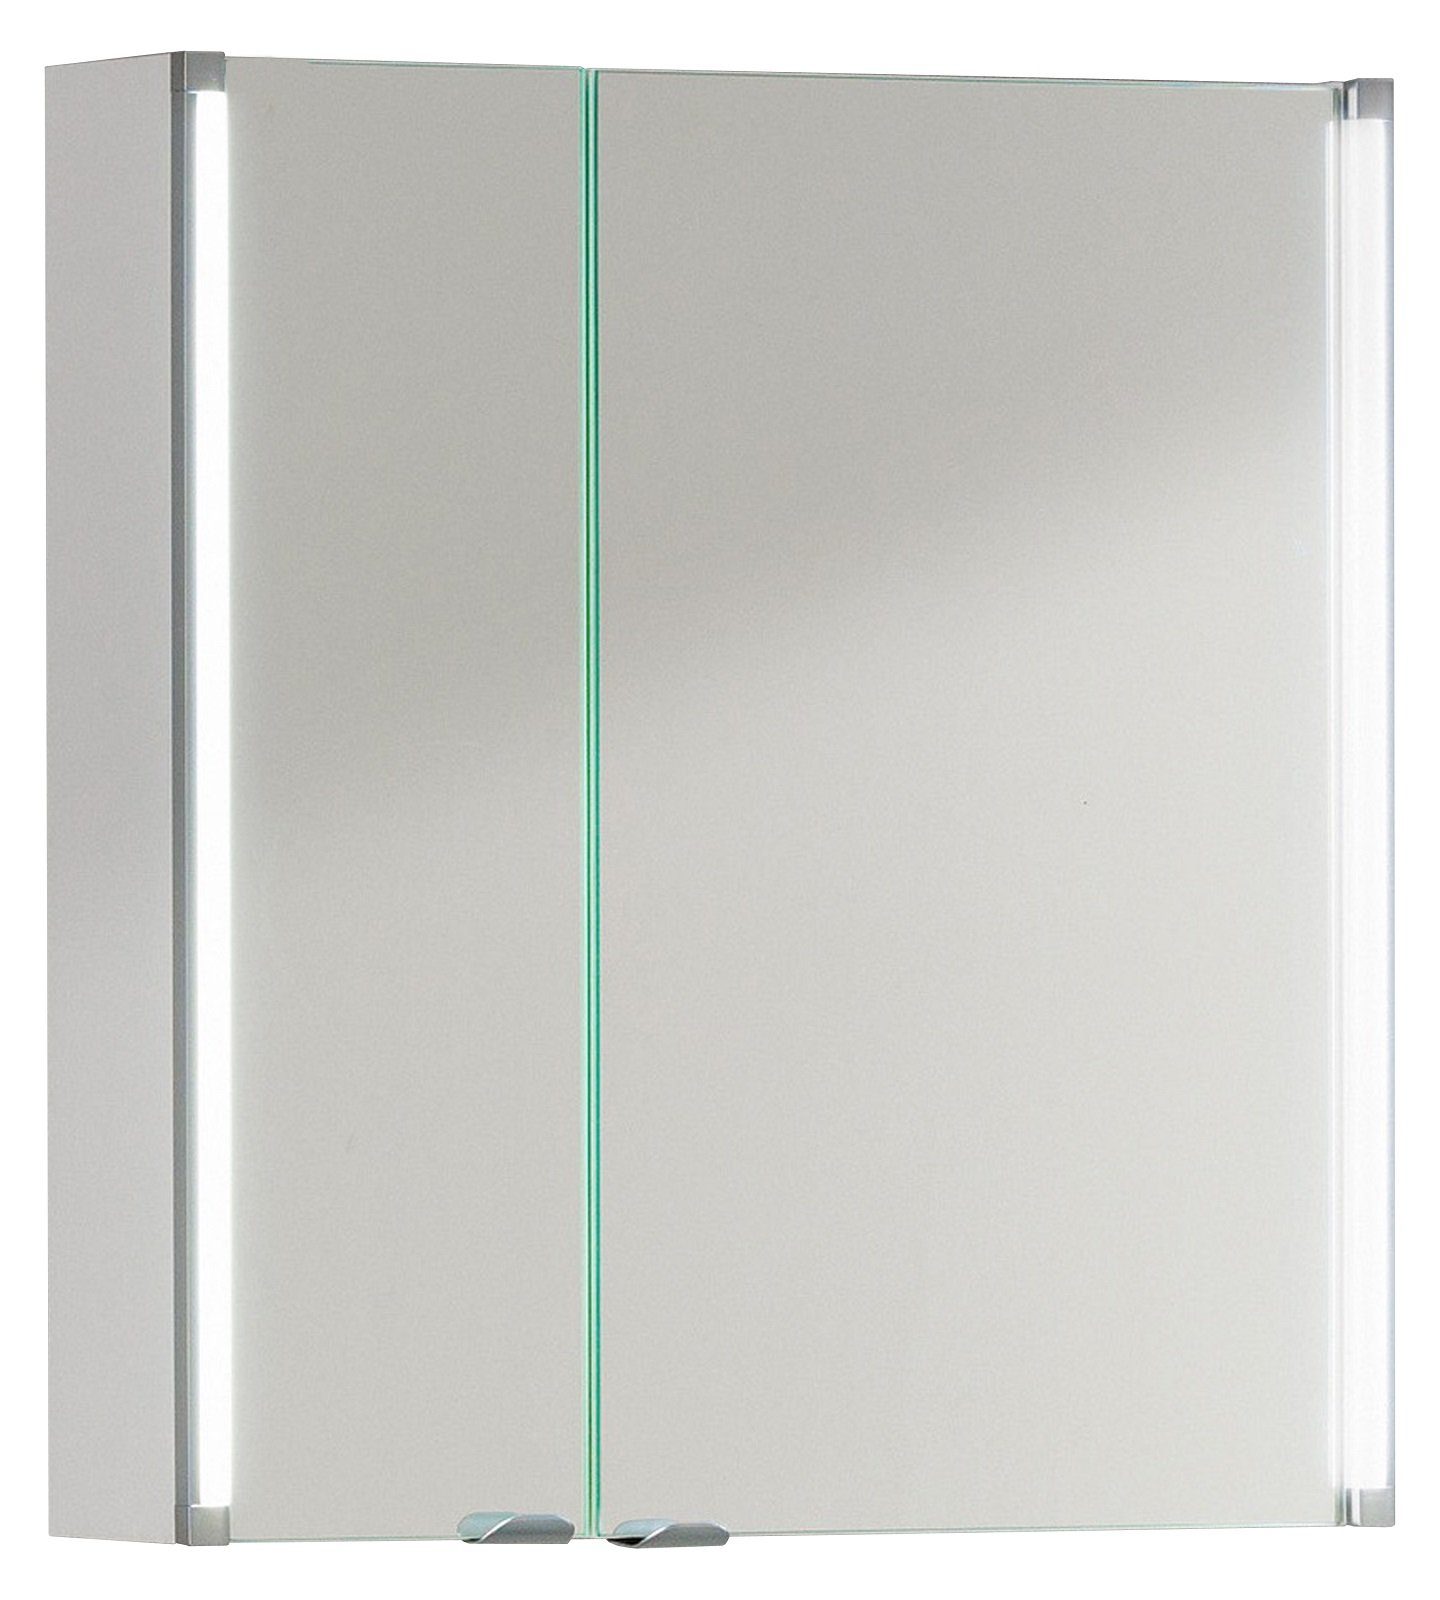 FACKELMANN Badezimmerspiegelschrank Fackelmann Spiegelschrank LED 61 cm weiß glanz Bad Schrank Spiegel